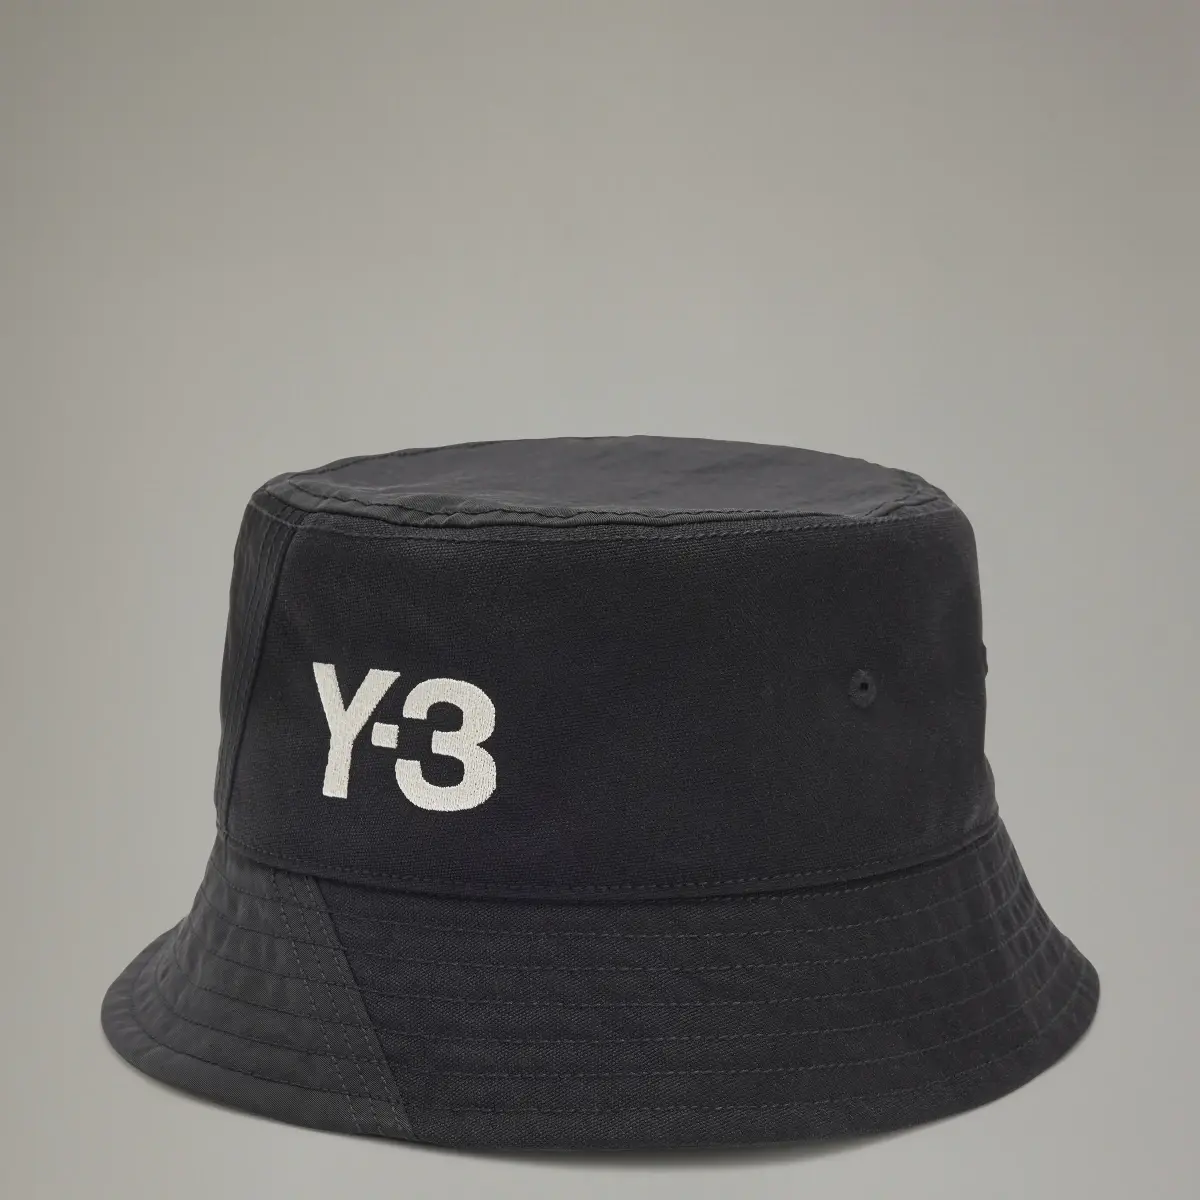 Adidas Y-3 BUCKET HAT. 1